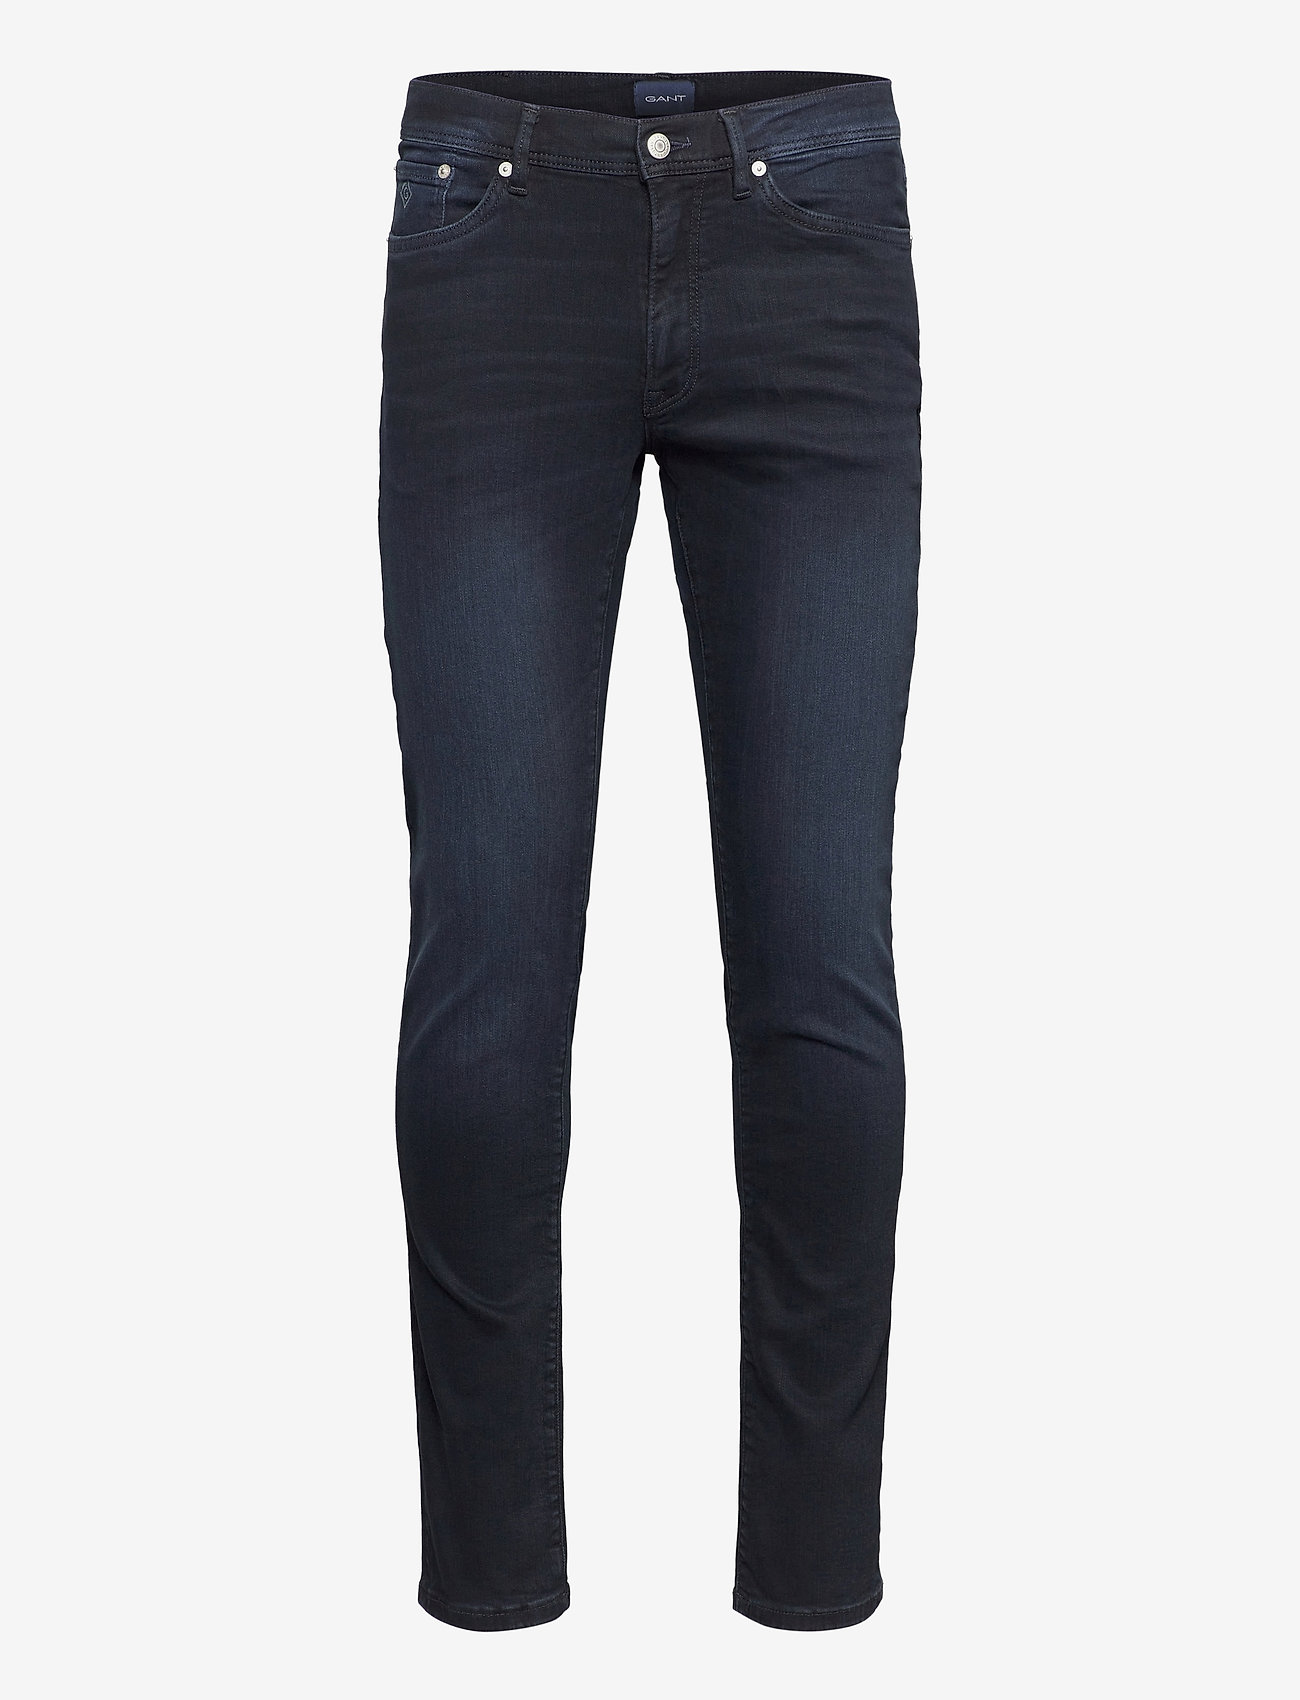 GANT - MAXEN ACTIVE-RECOVER JEANS - slim fit jeans - black vintage - 0